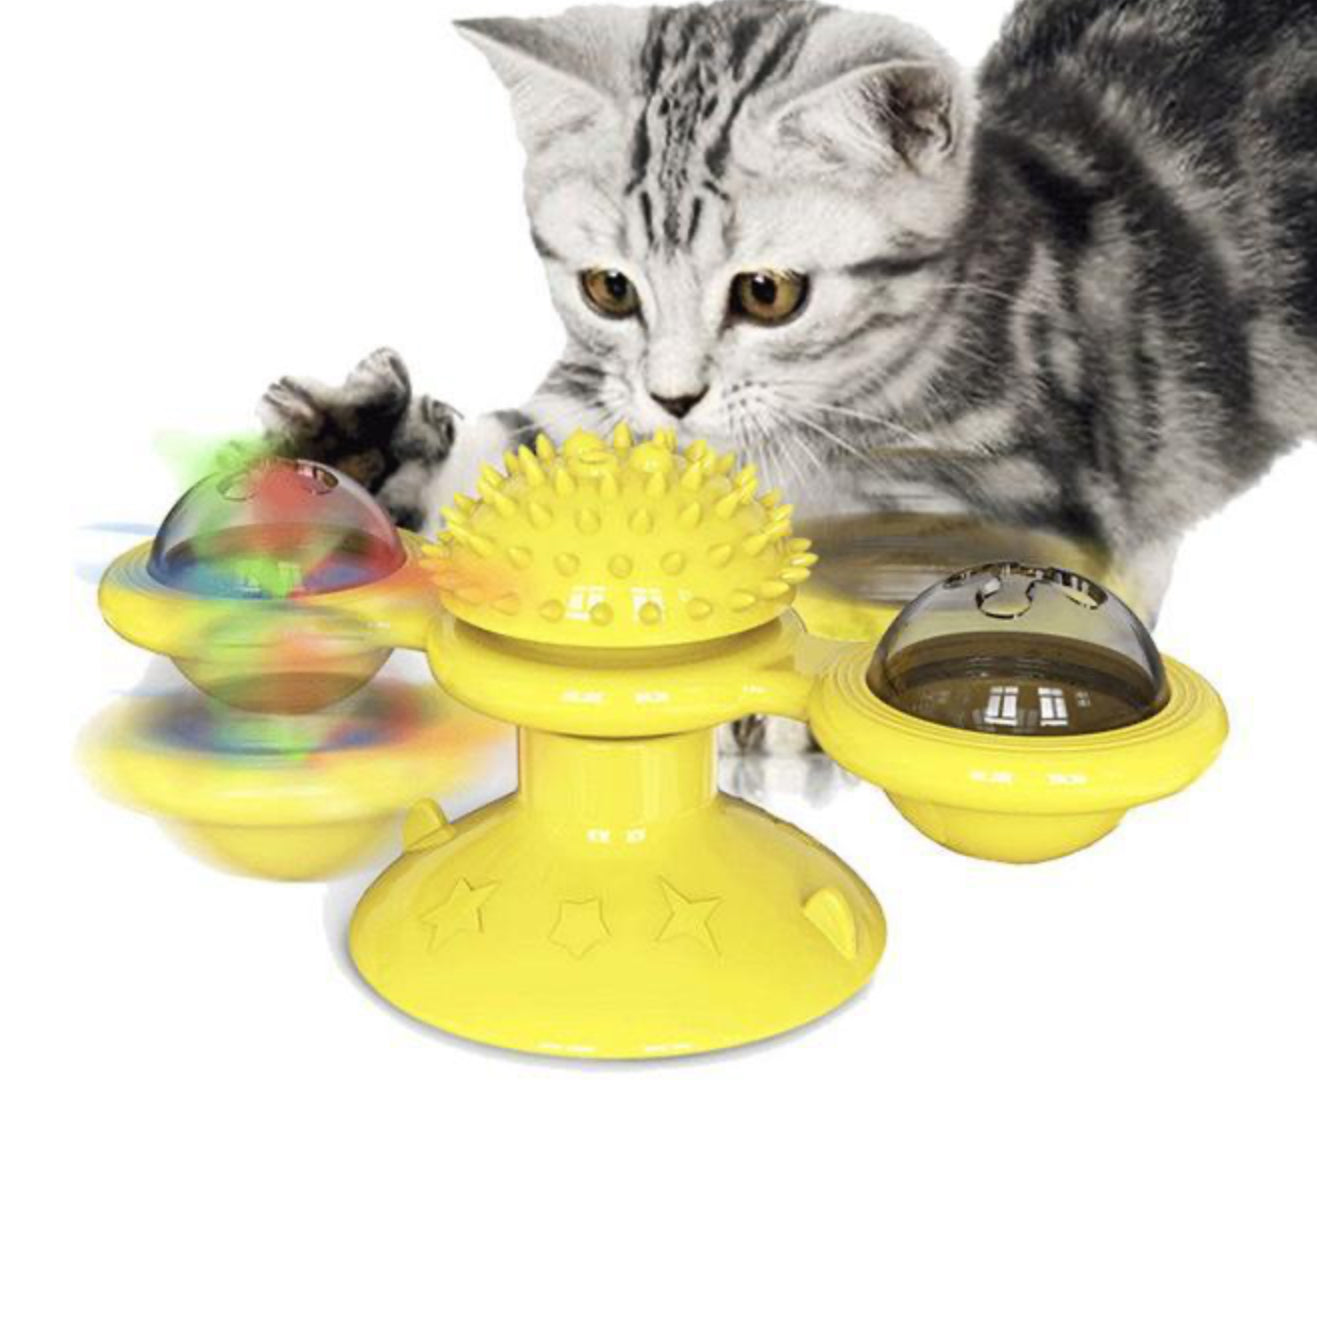 Cat Windmill Toy